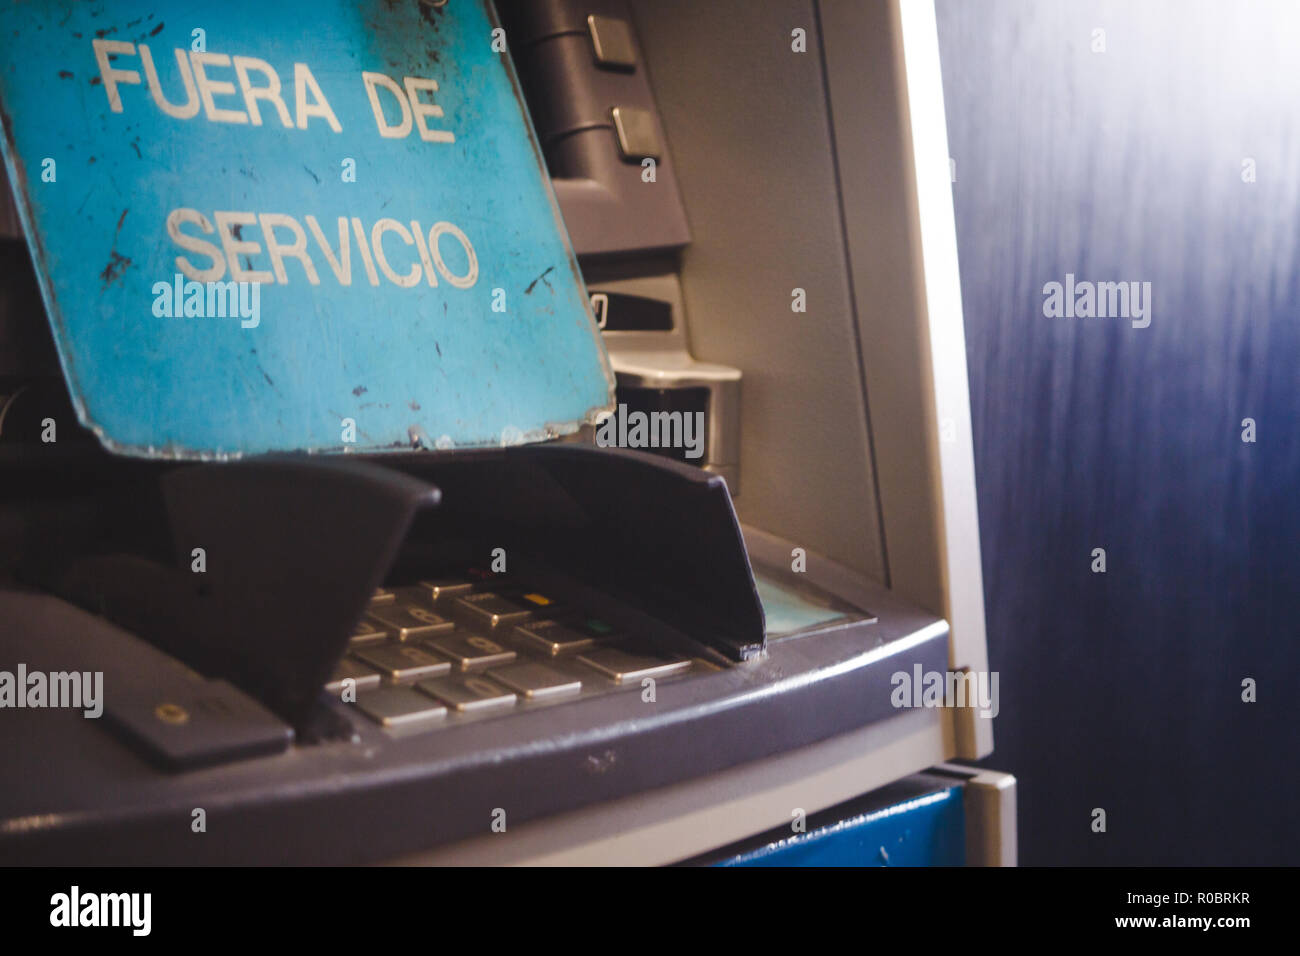 Teclado de pin de retiro de efectivo en cajeros automáticos de la máquina con un cartel que dice "fuera de servicio" en español Foto de stock